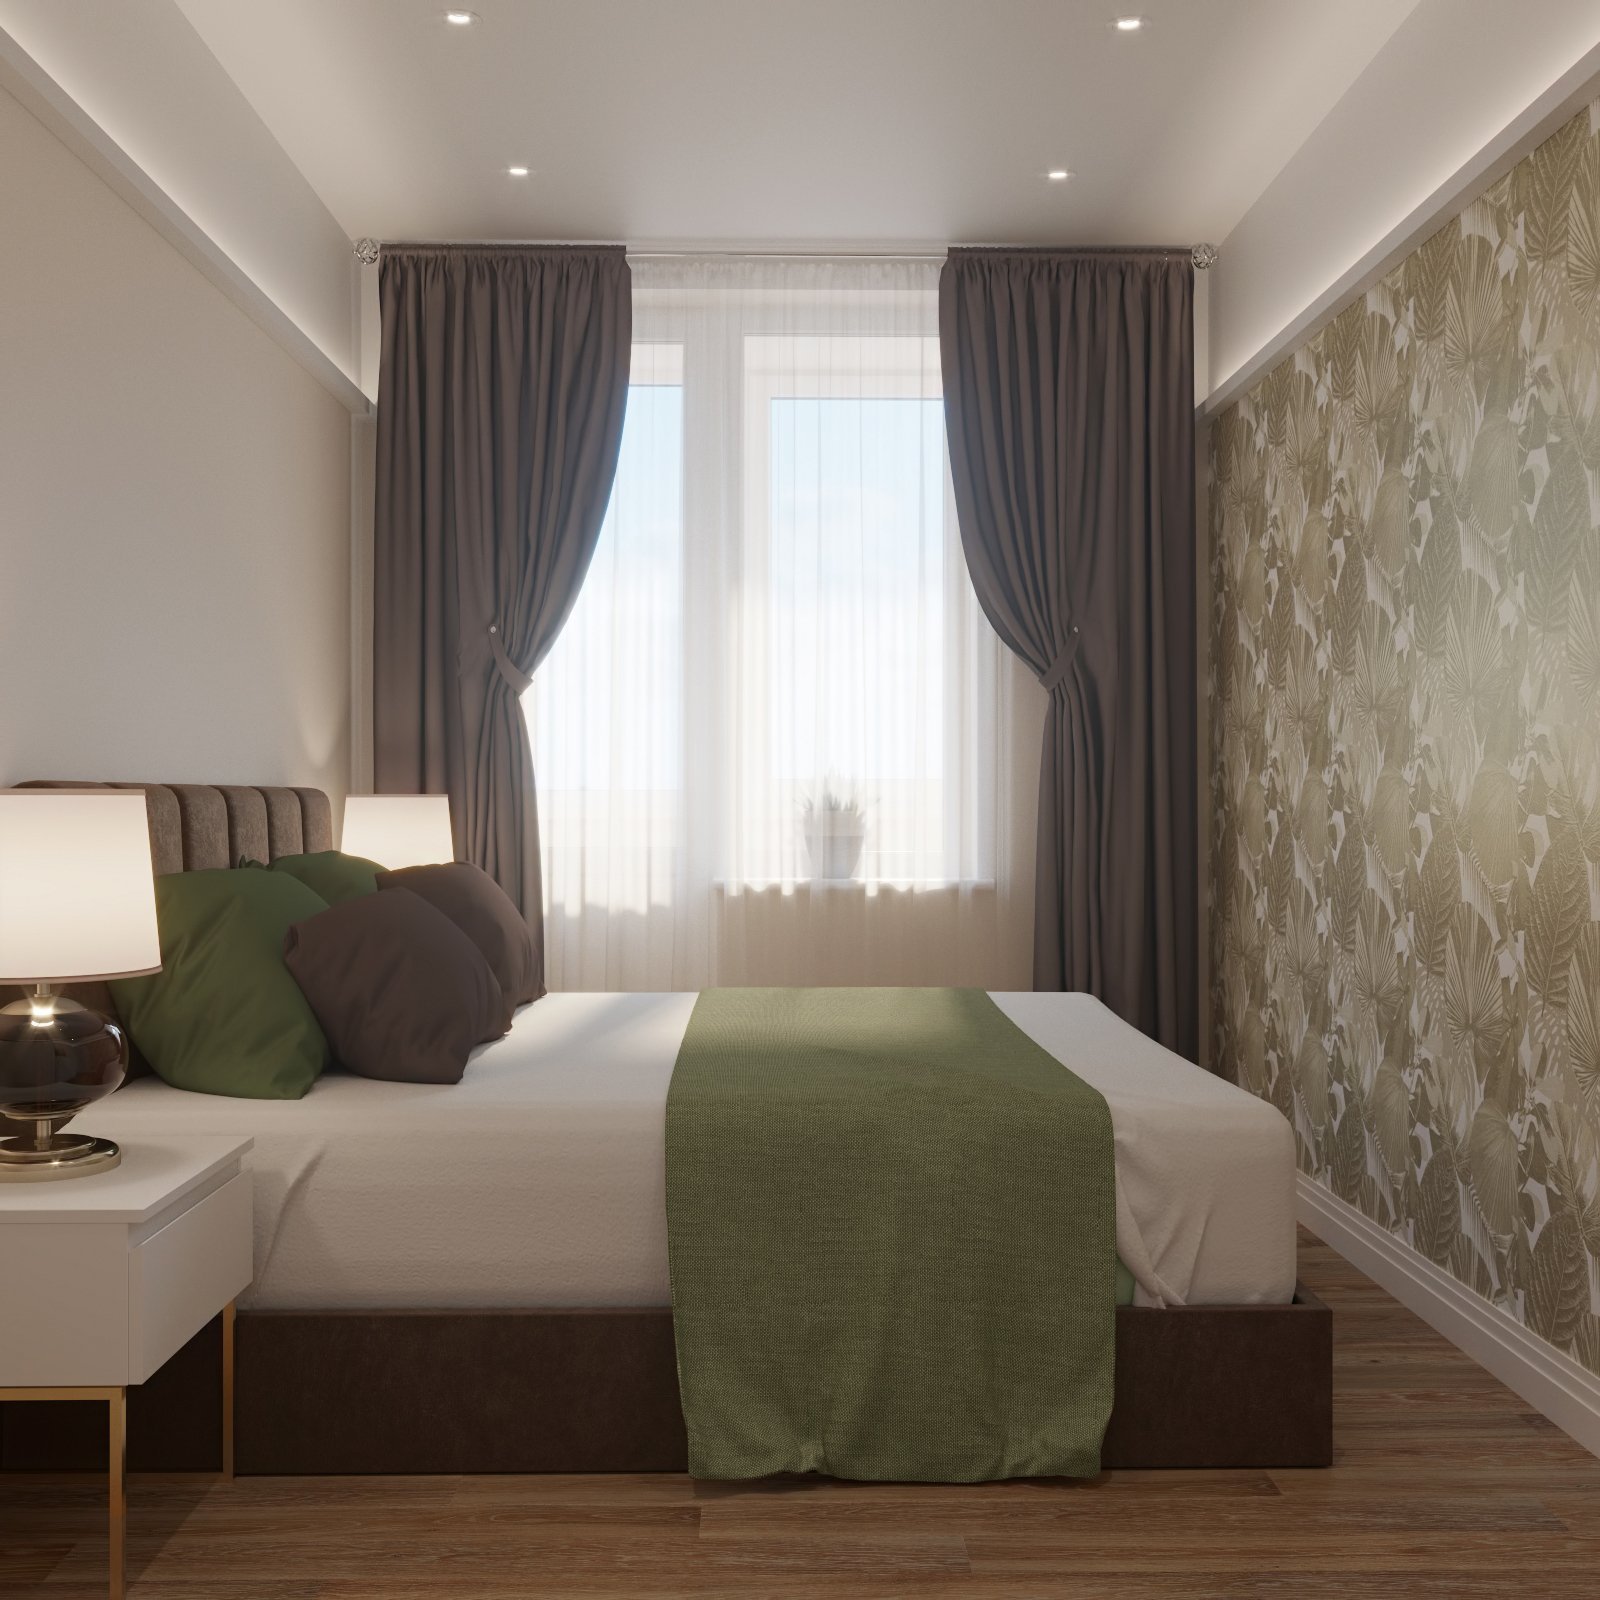 Дизайн спальни с двумя окнами на разных стенах 12 кв м - 98 фото